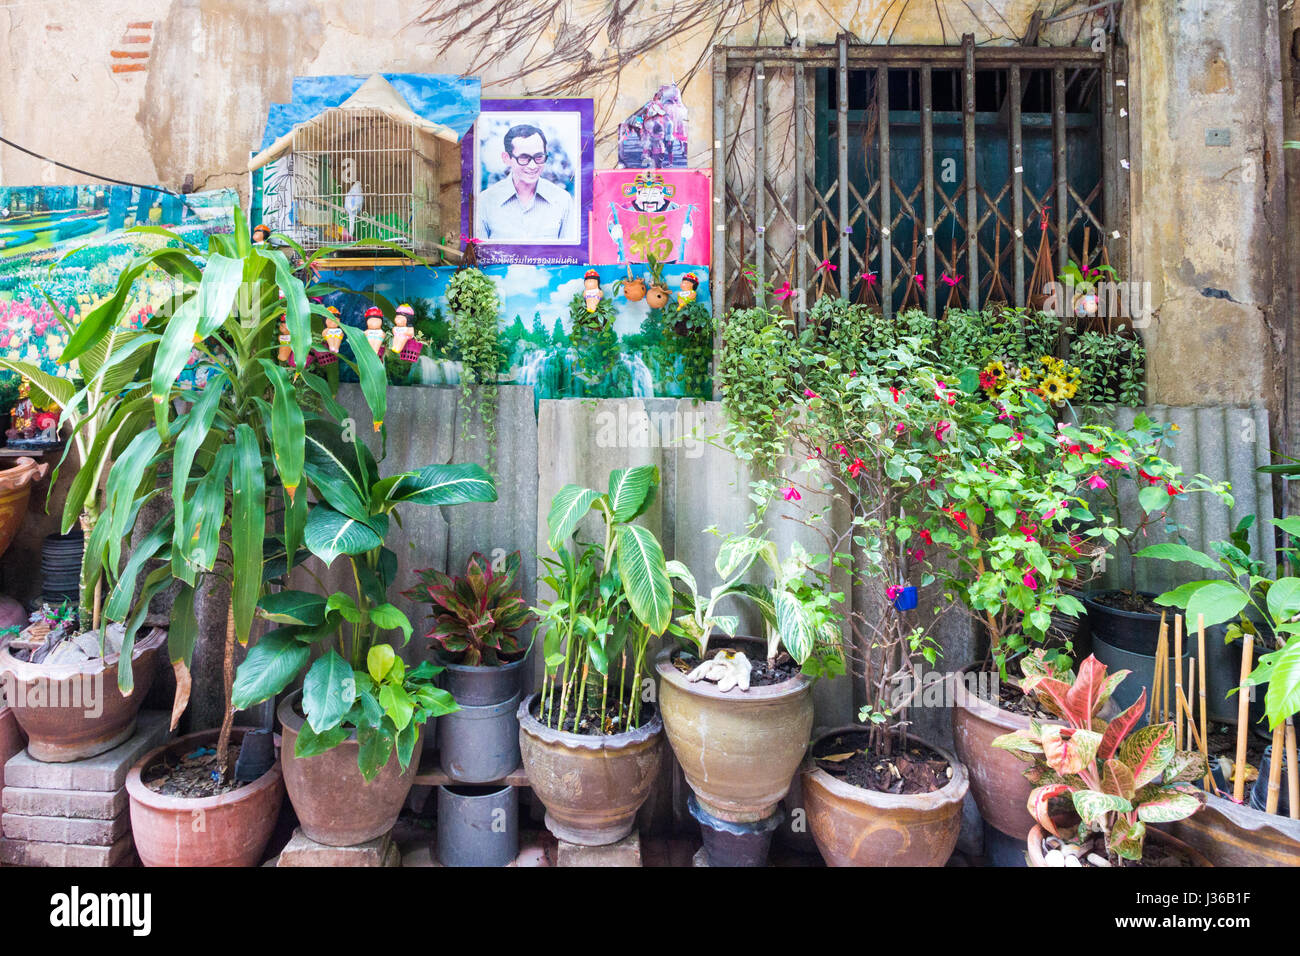 Typisches Haus außen mit Pflanzen und Vögel im Vogelkäfig, in einer kleinen Seitenstraße in Chinatown, Bangkok, Thaland Stockfoto